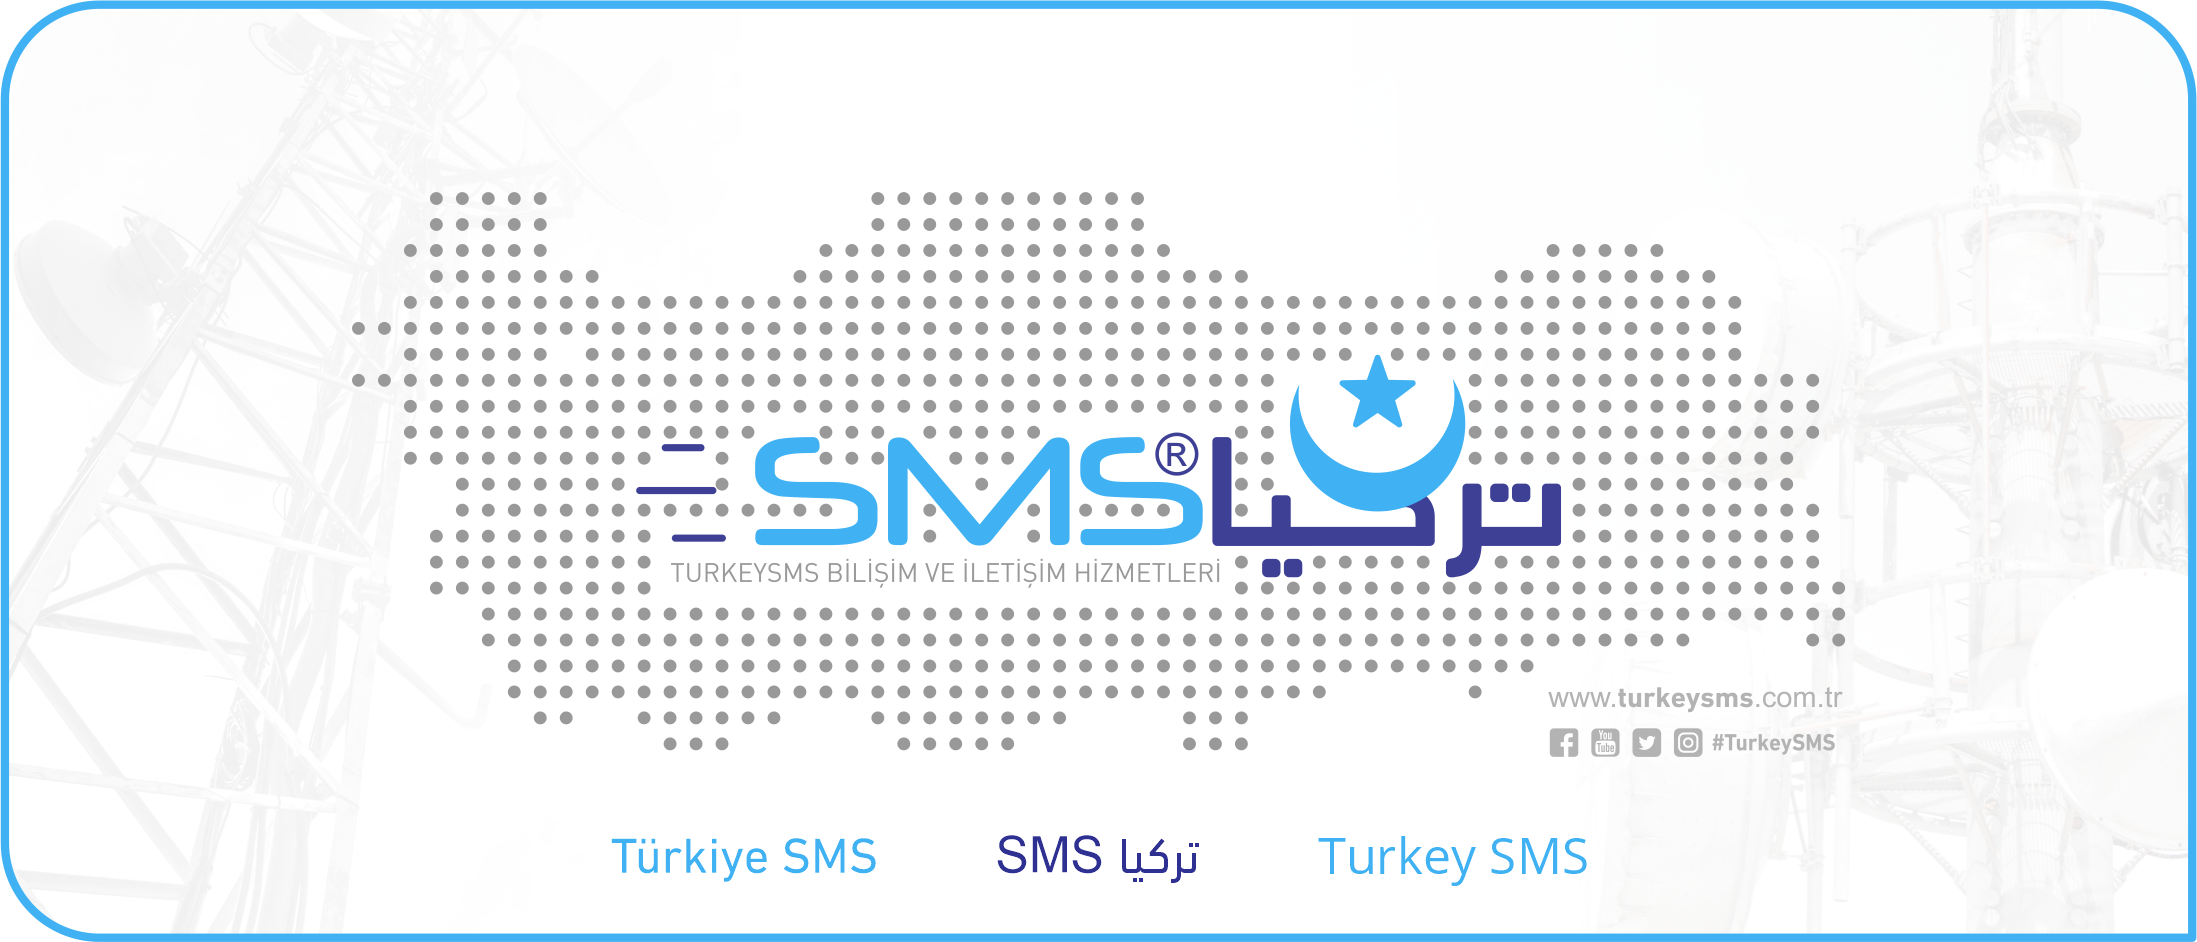 Turkiye SMS